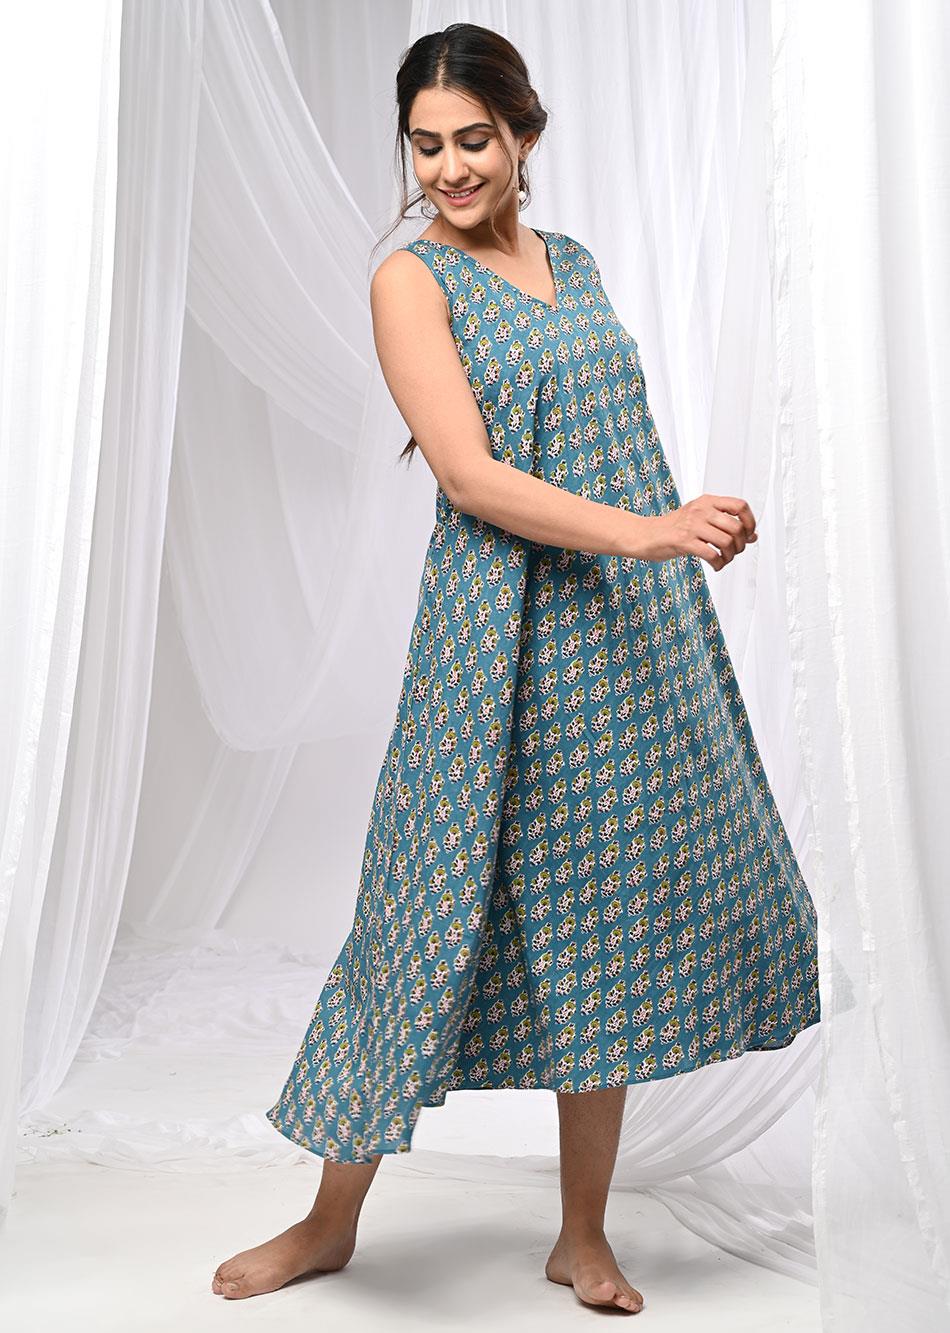 Fulwari Printed Dress